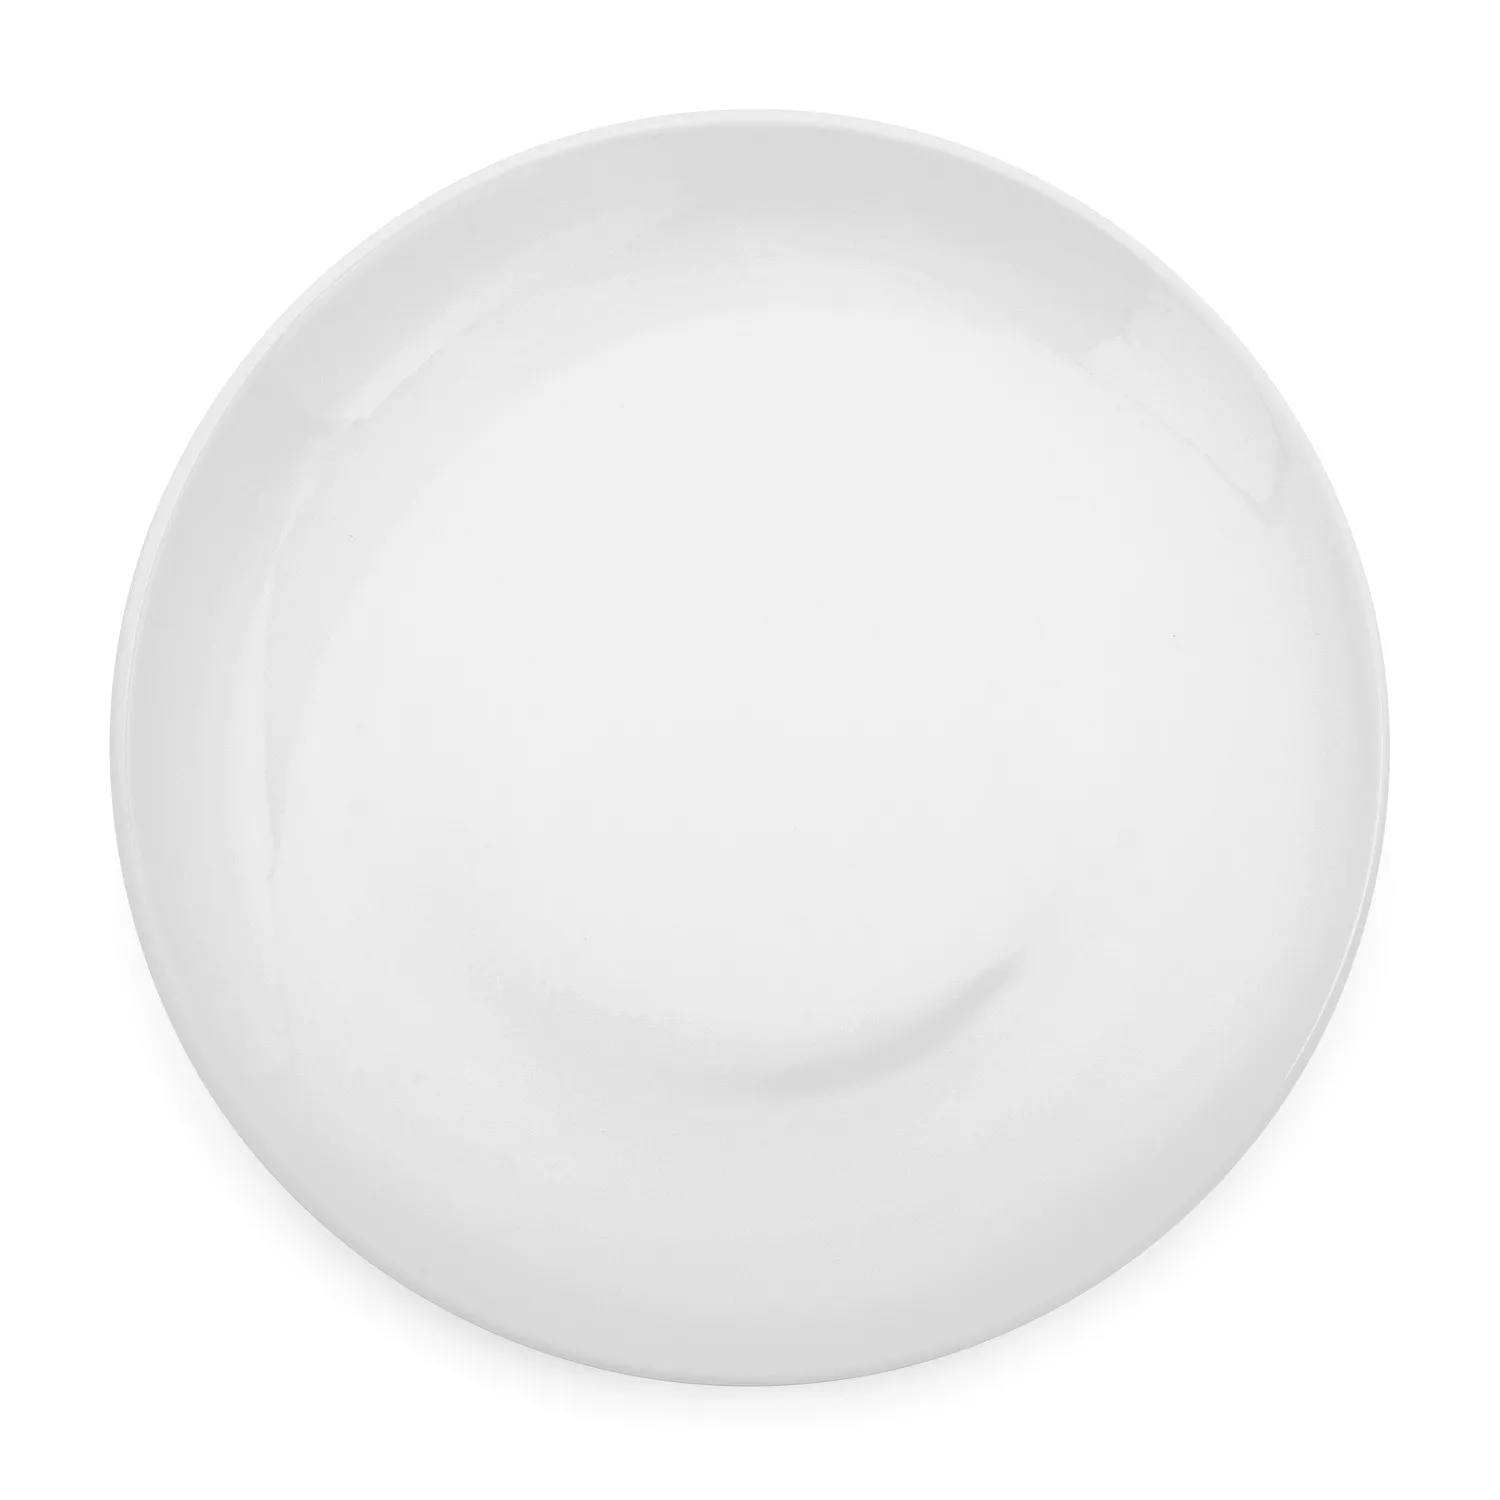 Sur La Table Coupe Porcelain Dinner Plates